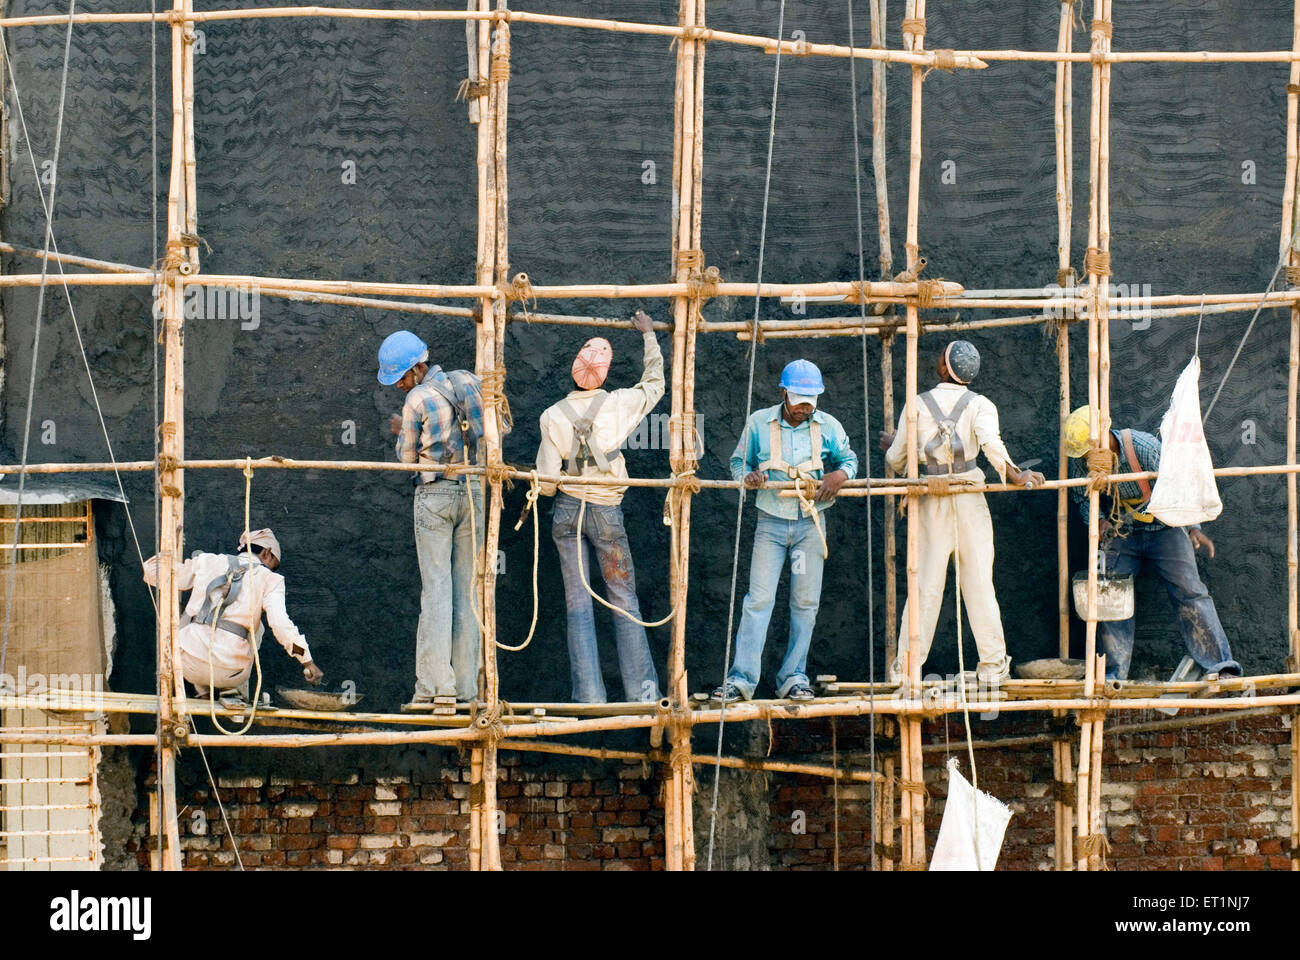 Ouvriers de la construction échafaudage de bambou Bombay Mumbai Maharashtra Inde Asie Banque D'Images